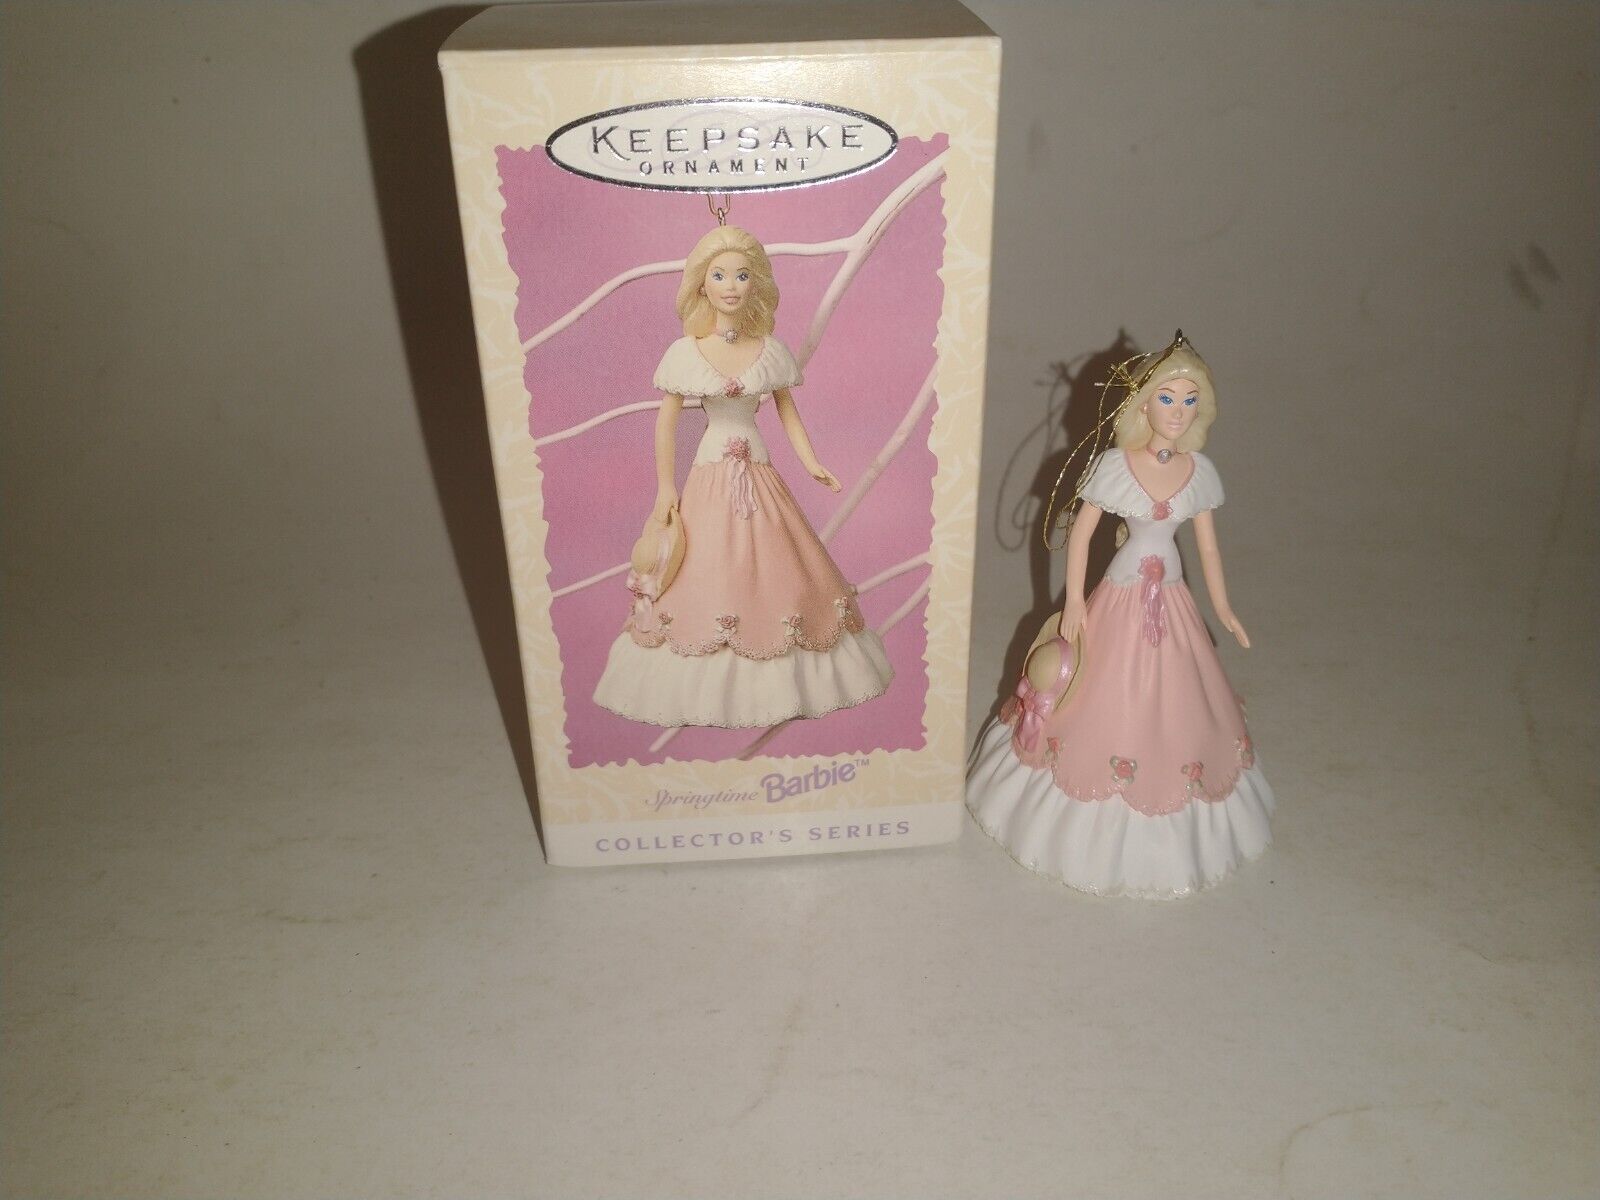 Vintage 1997 Springtime Barbie Hallmark Keepsake Ornament